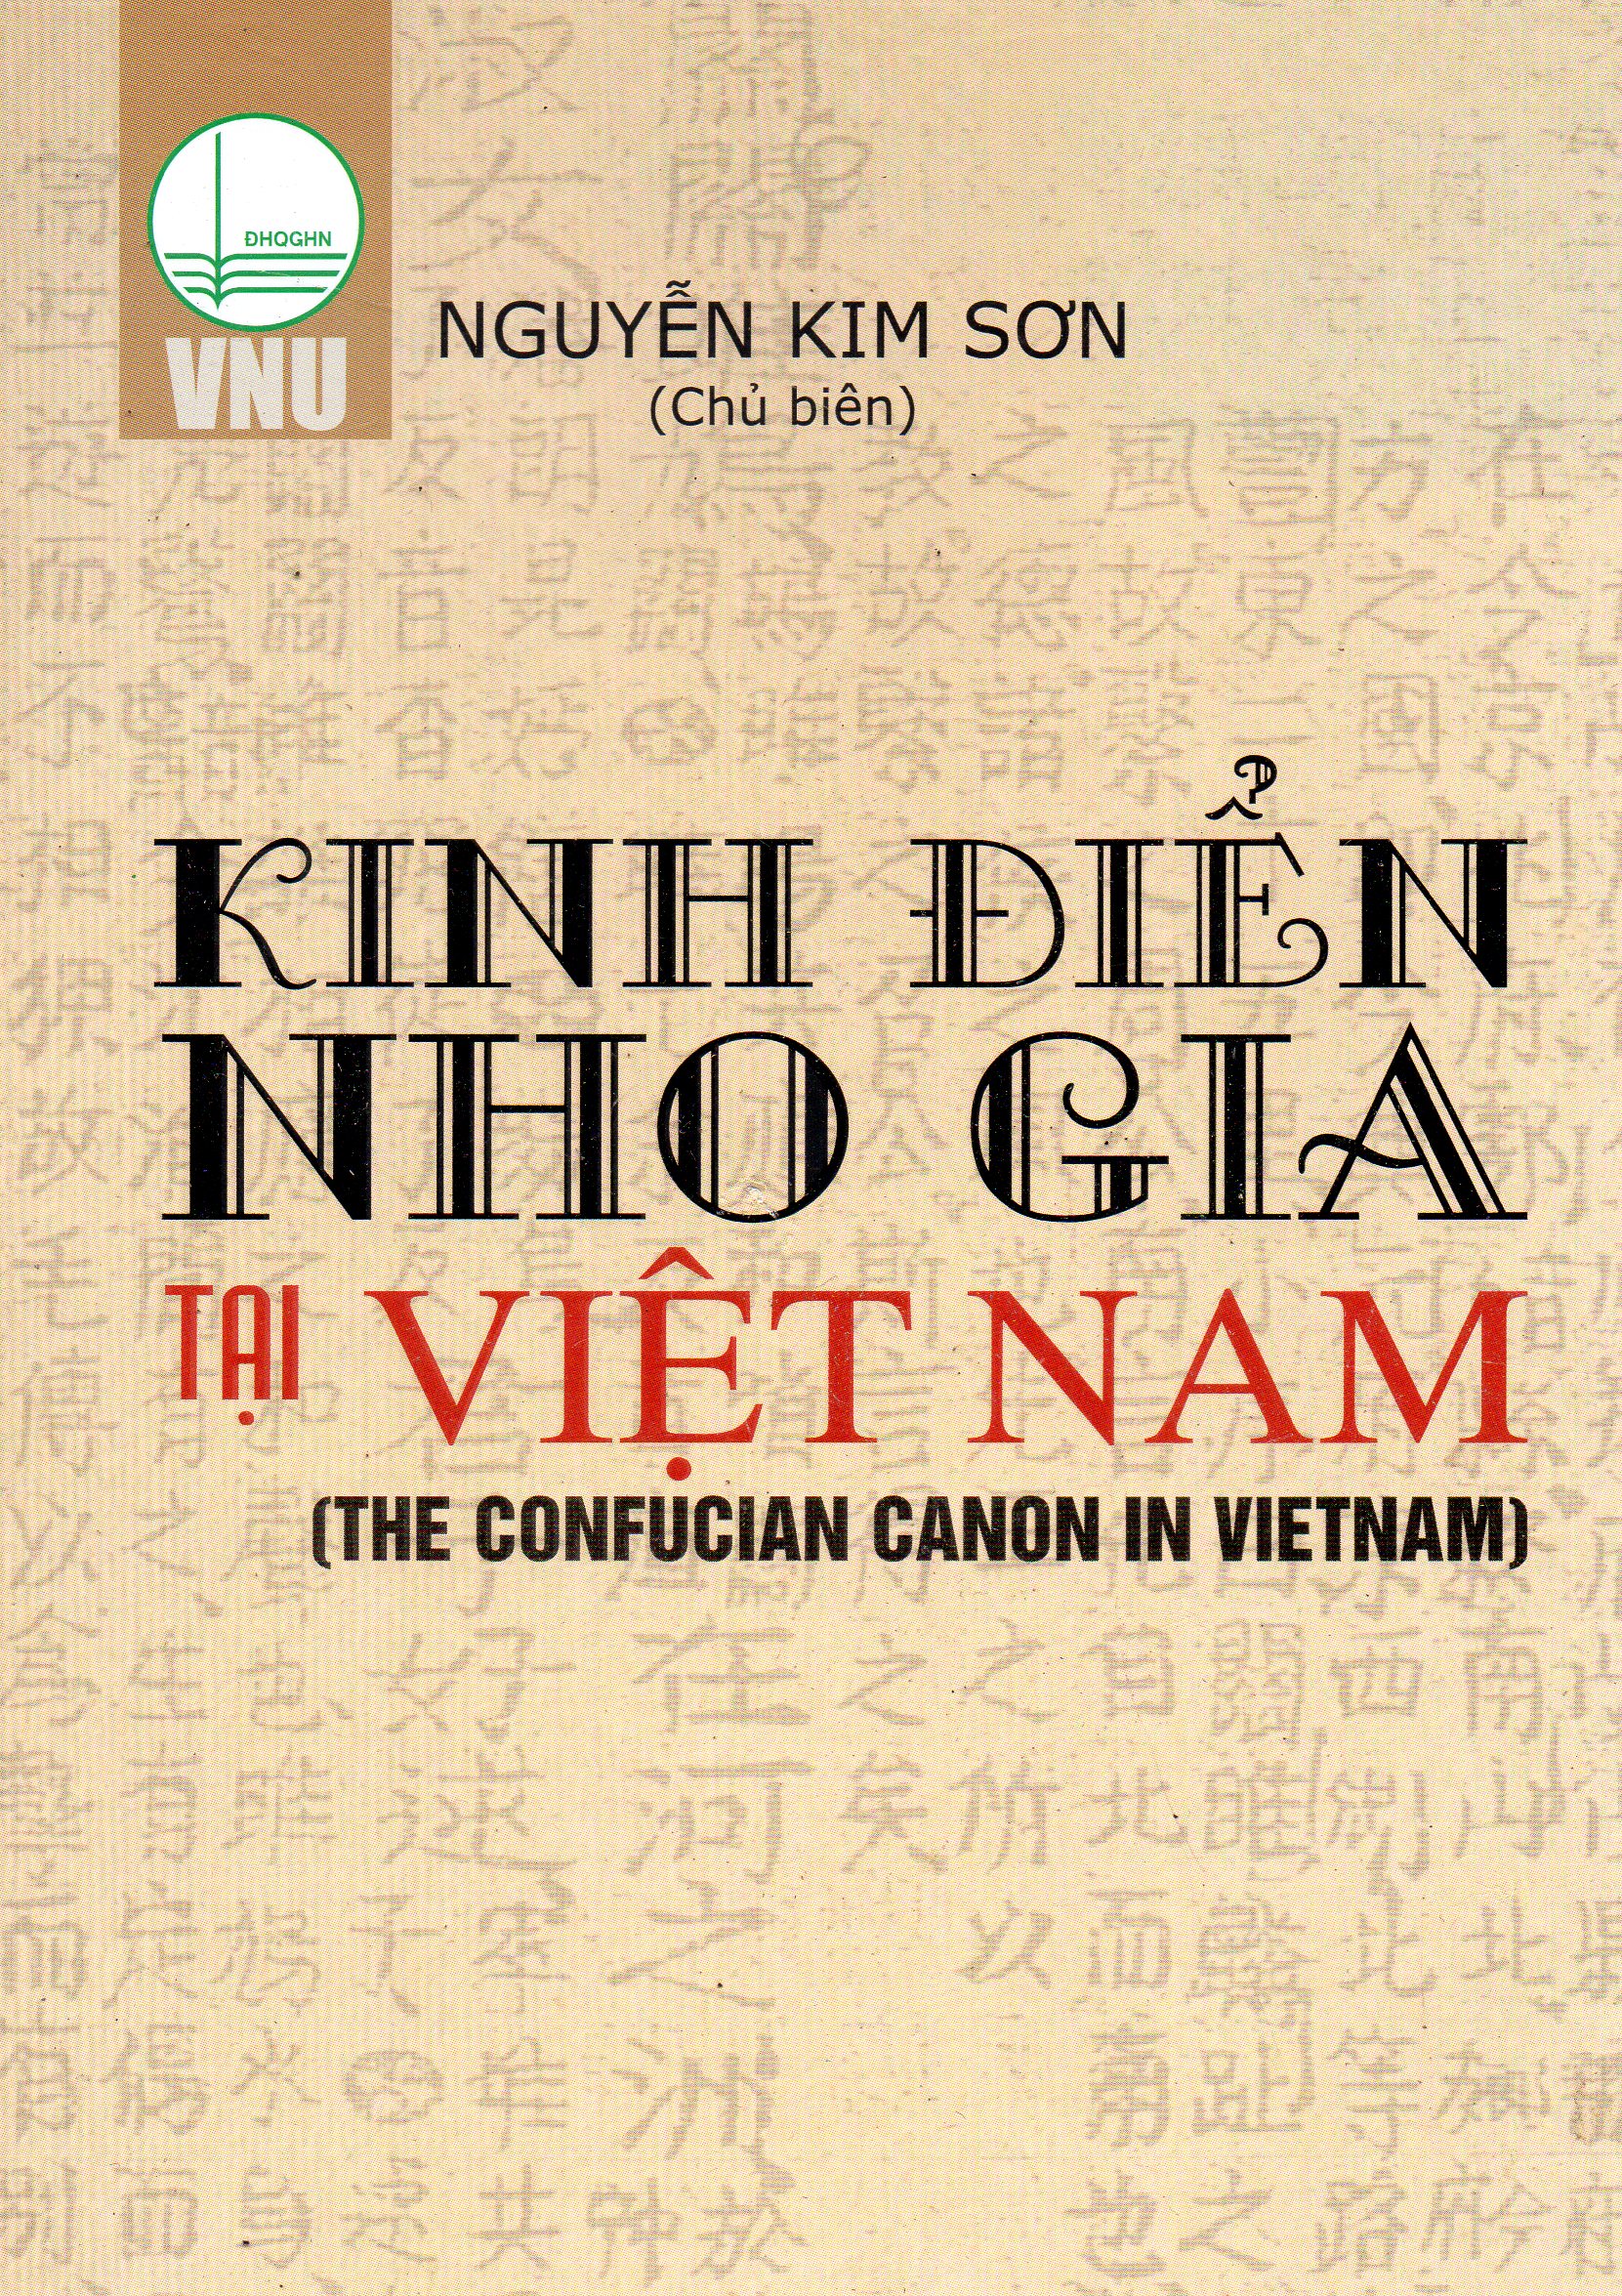 Kinh điển Nho gia tại Việt nam - Nguyễn Kim Sơn